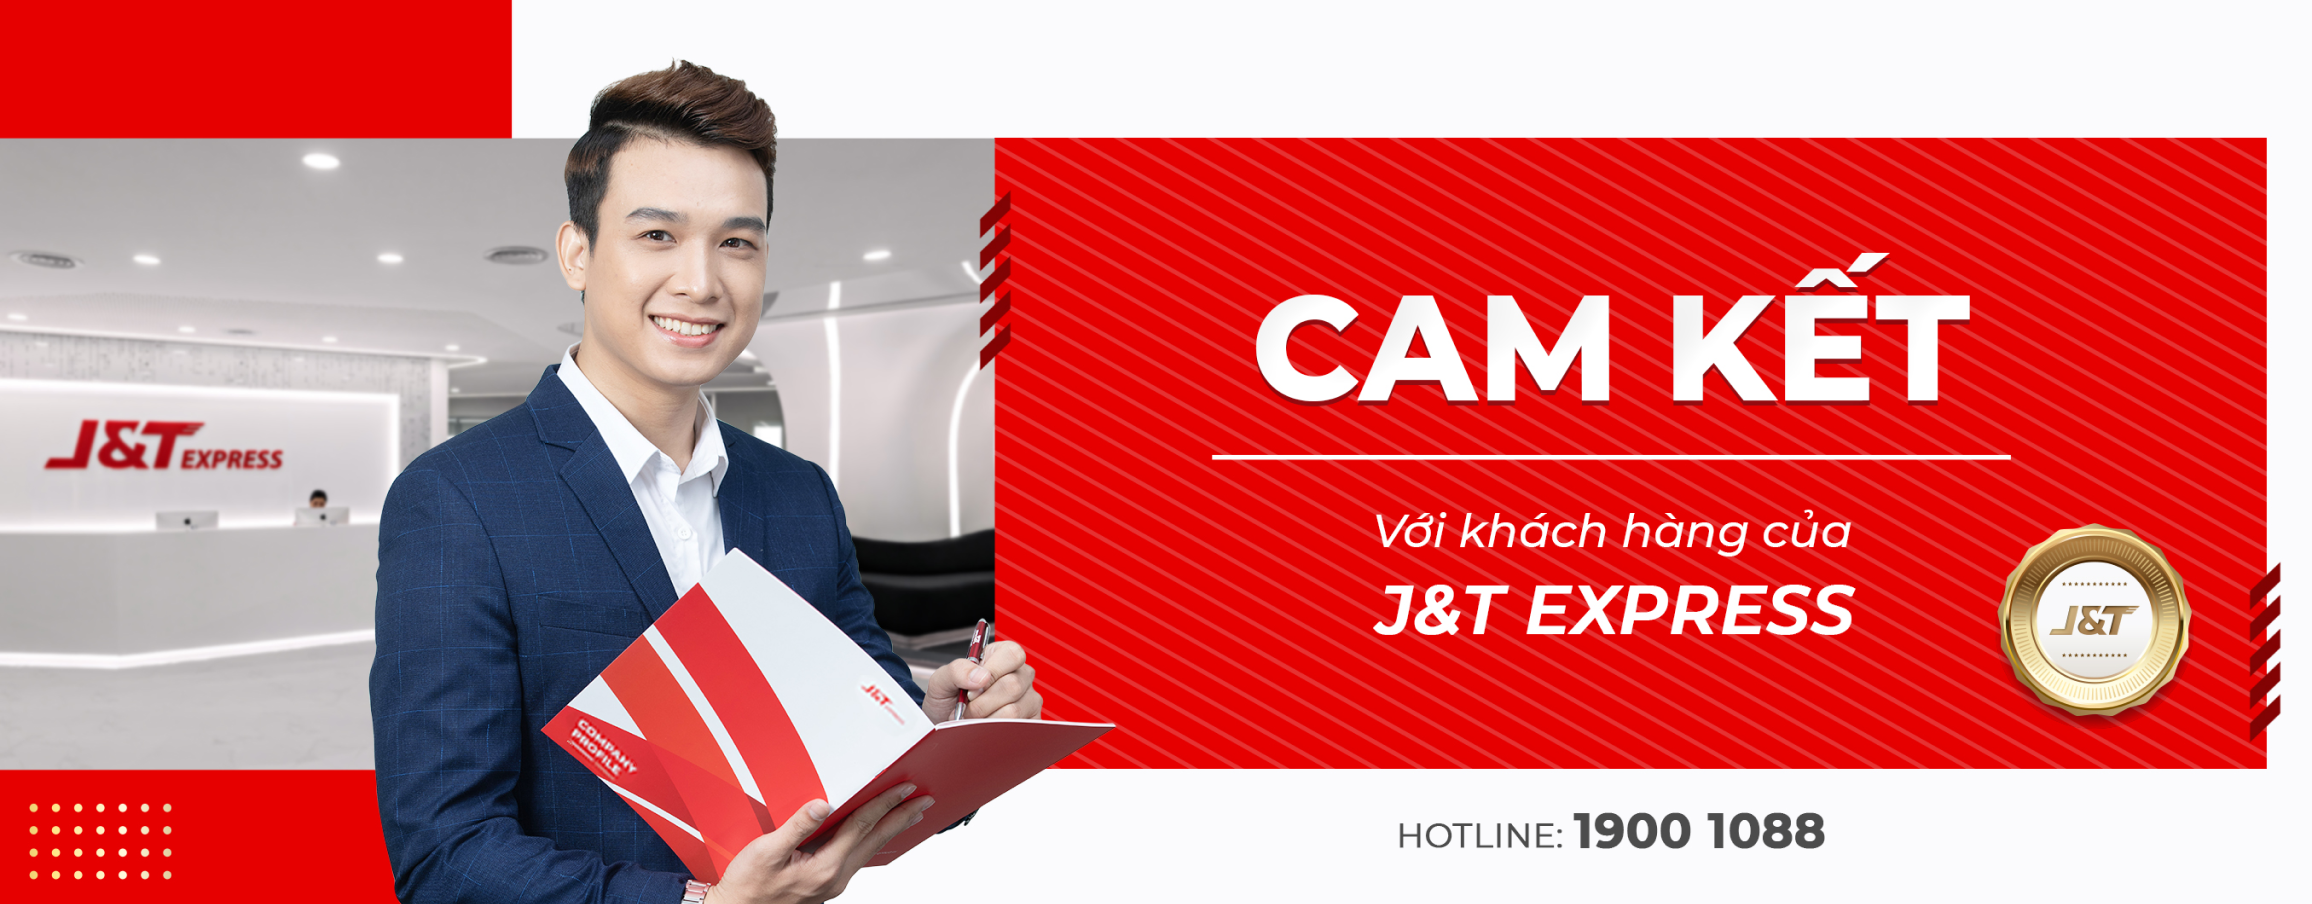 J&T Express - Cam kết của chúng tôi